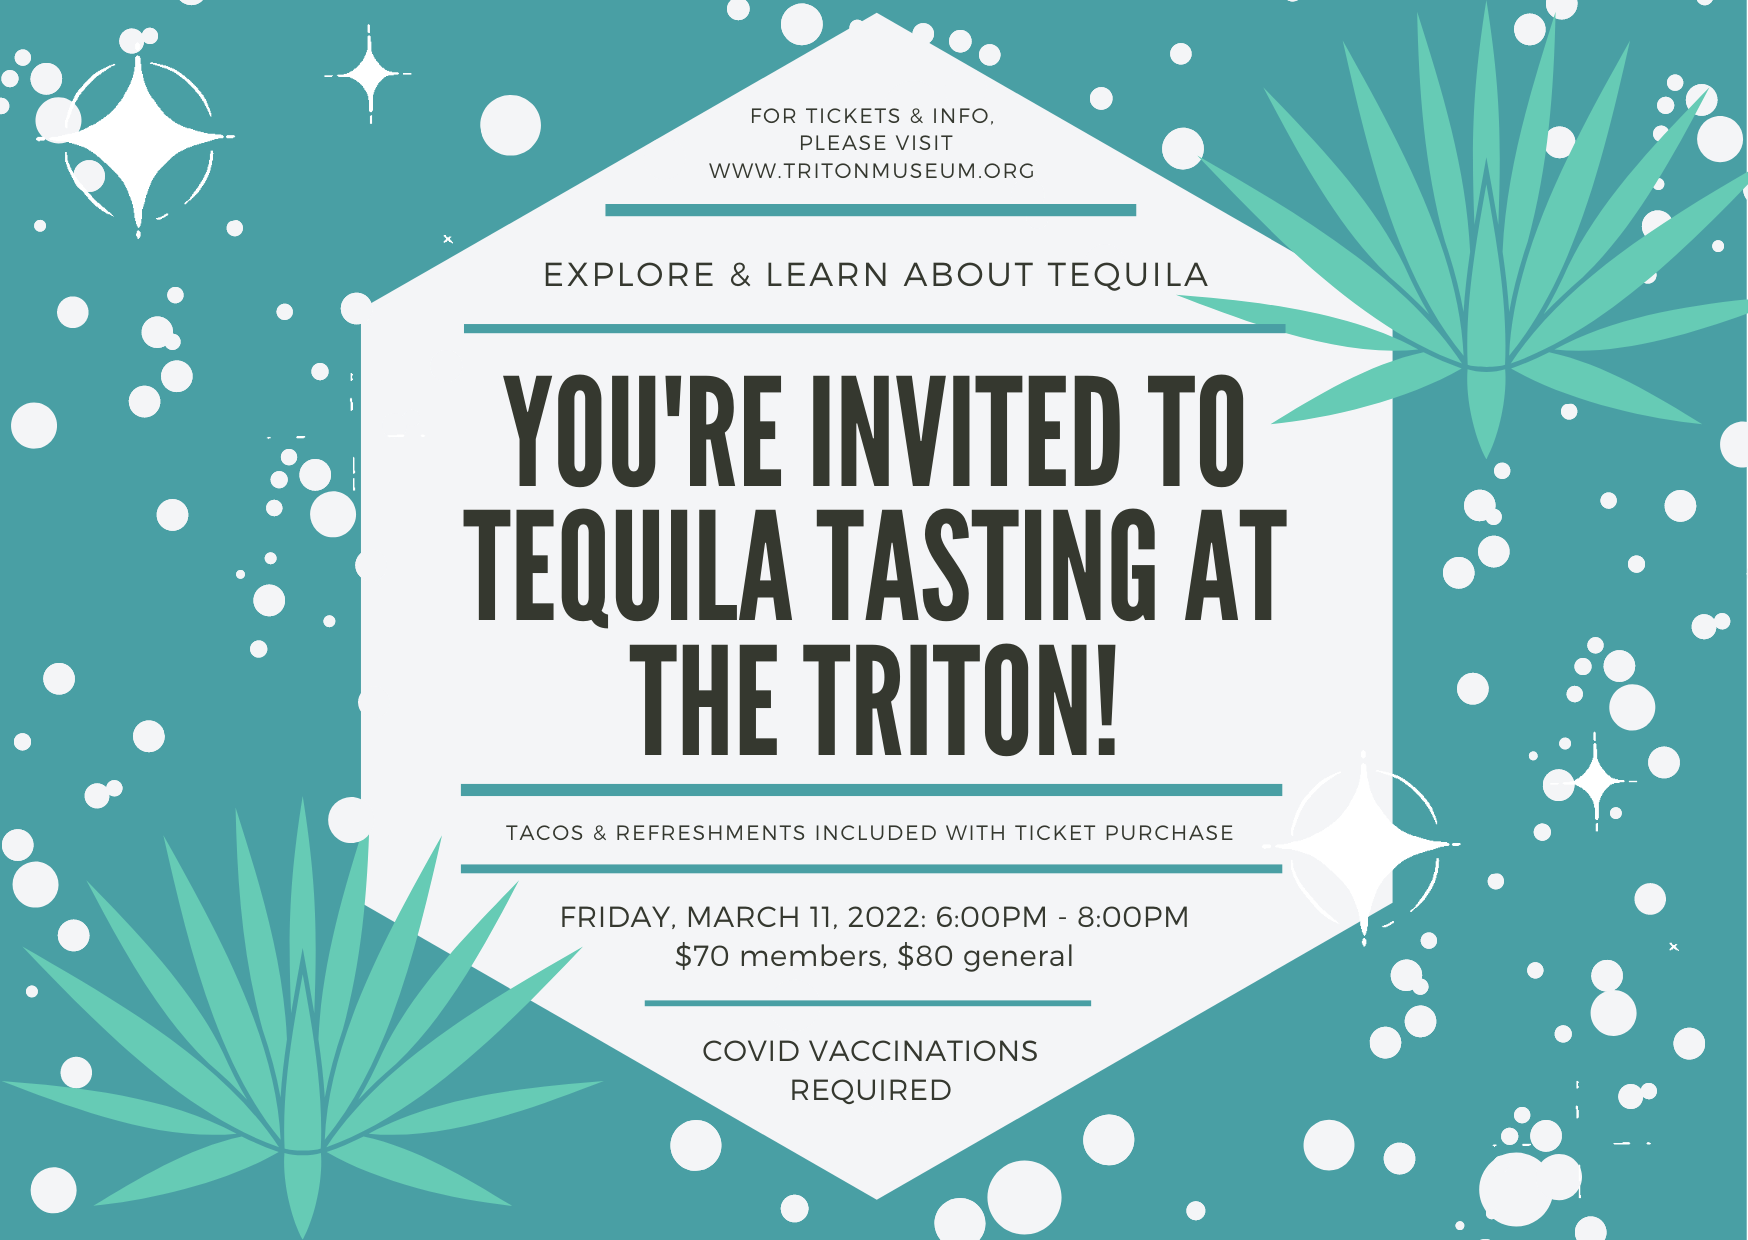 Tequila Tasting at the Triton Museum, Santa Clara, California, United States